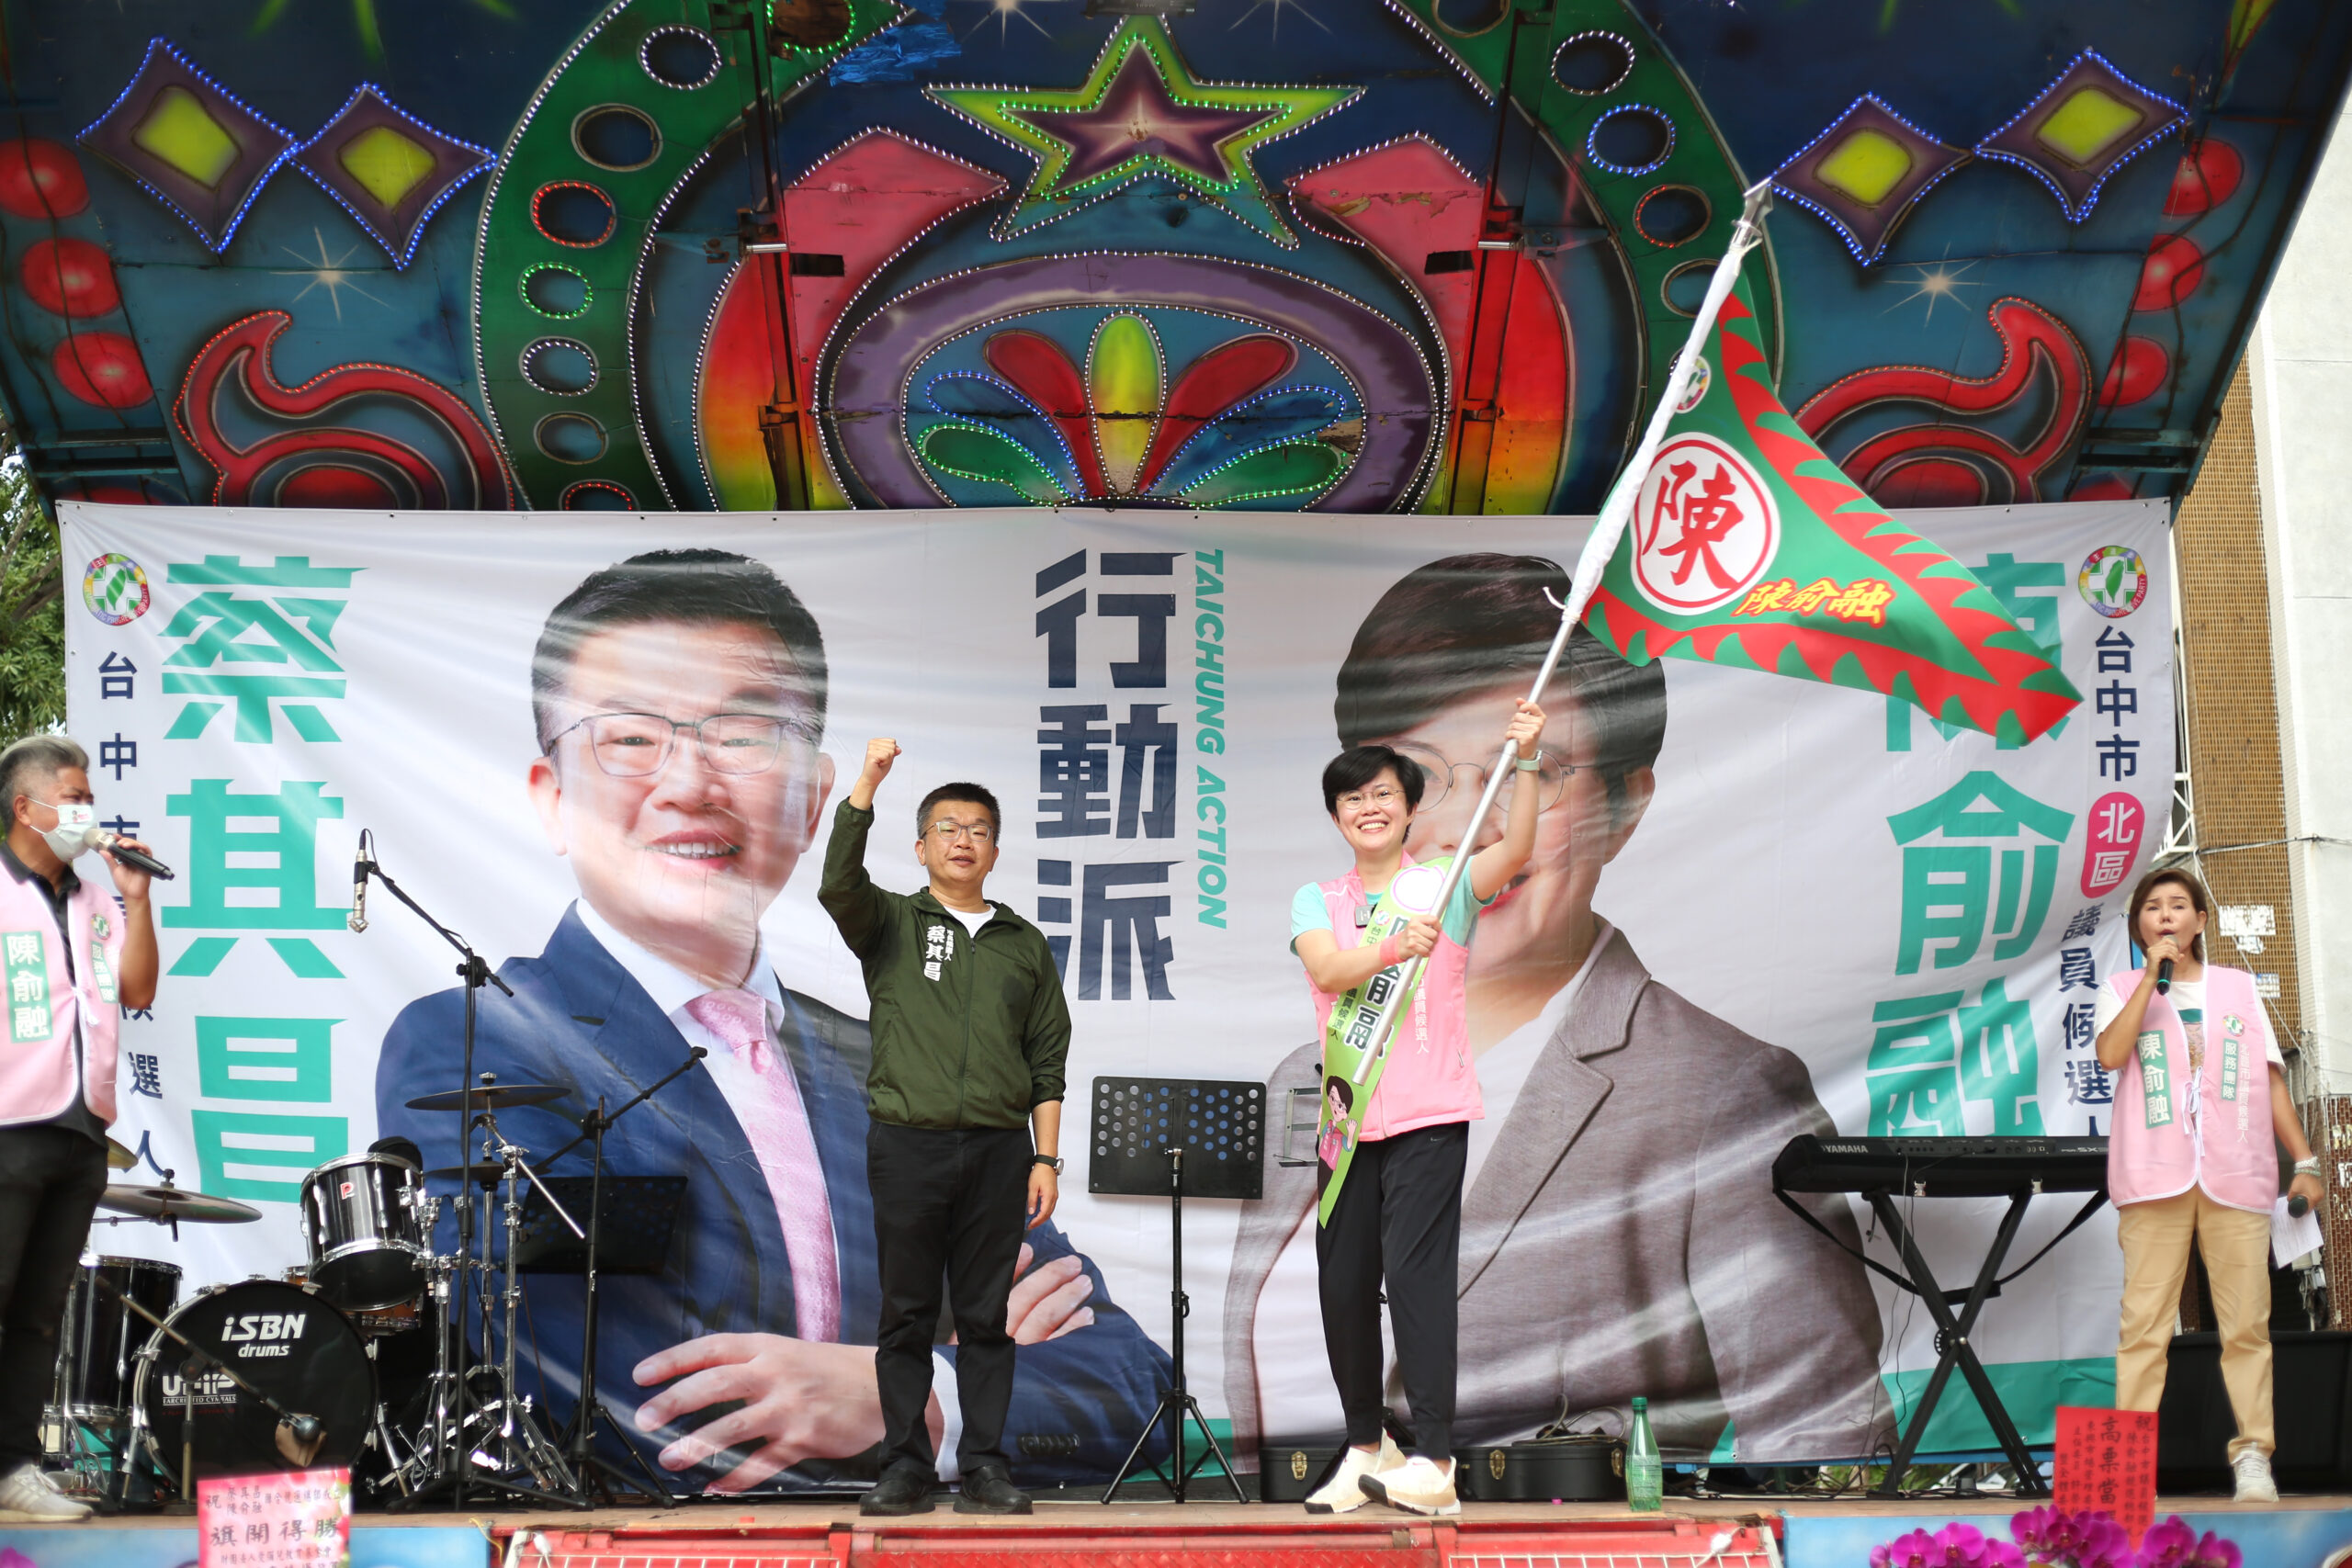 市議員候選人陳俞融成立競選總部 承諾帶給北區建設新的活力與視角